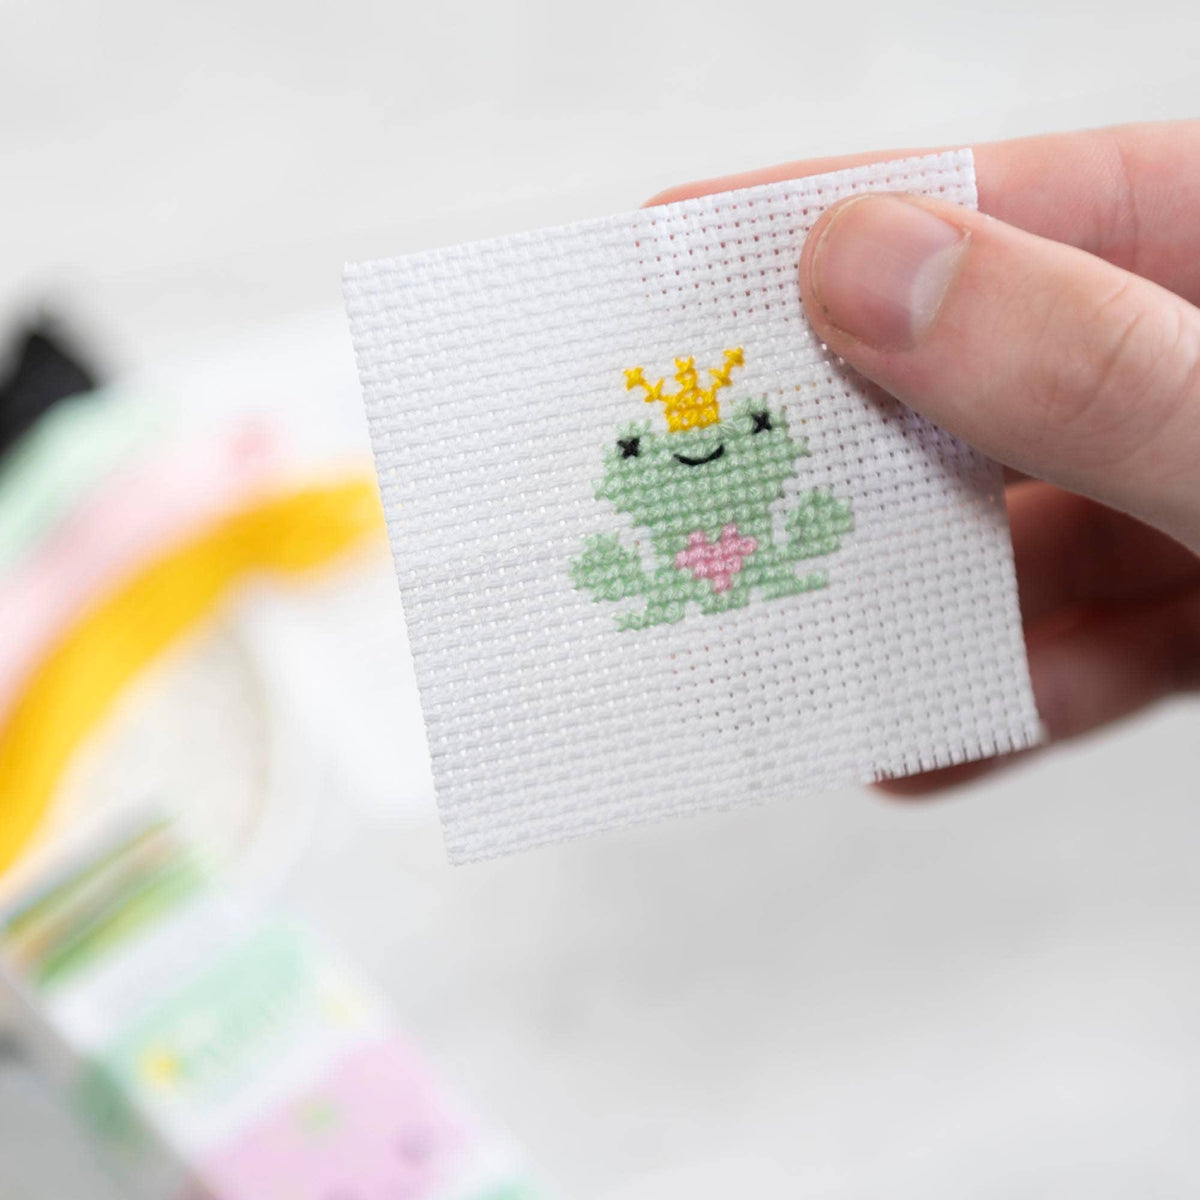 Kawaii Frog Prince Mini Cross Stitch Kit in a Matchbox